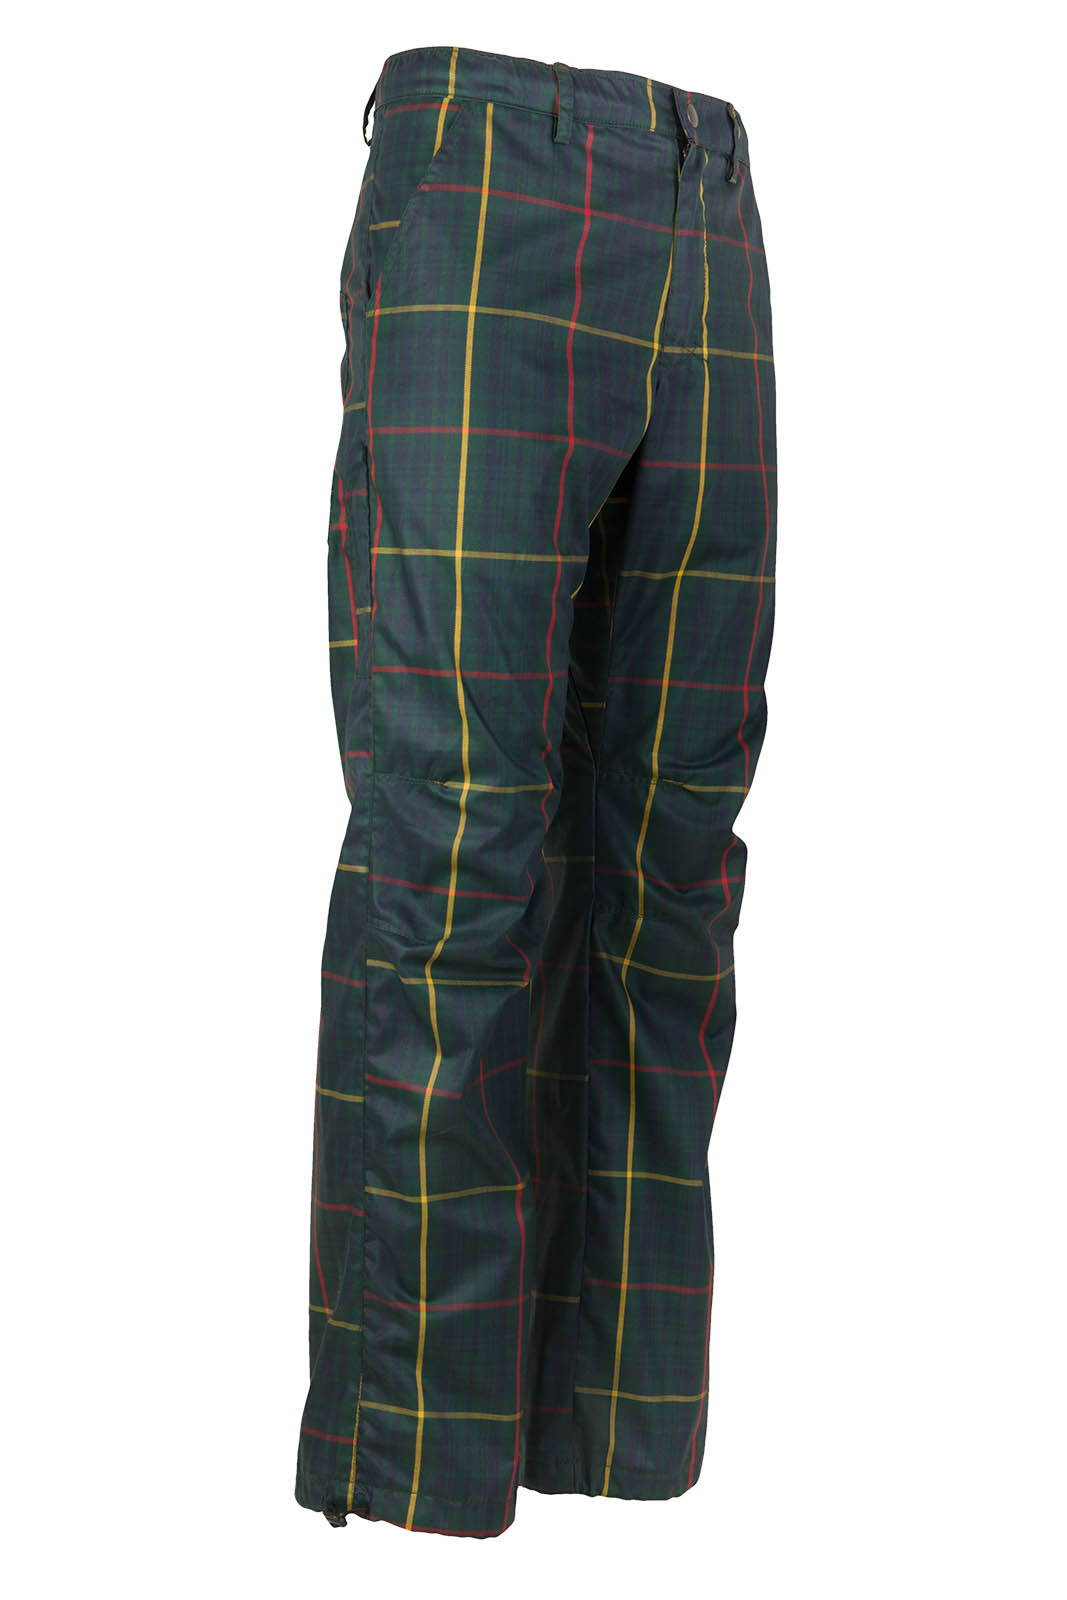 pantalon de sport pour homme Prince de Galles vert forêt BILLY 2 Monvic